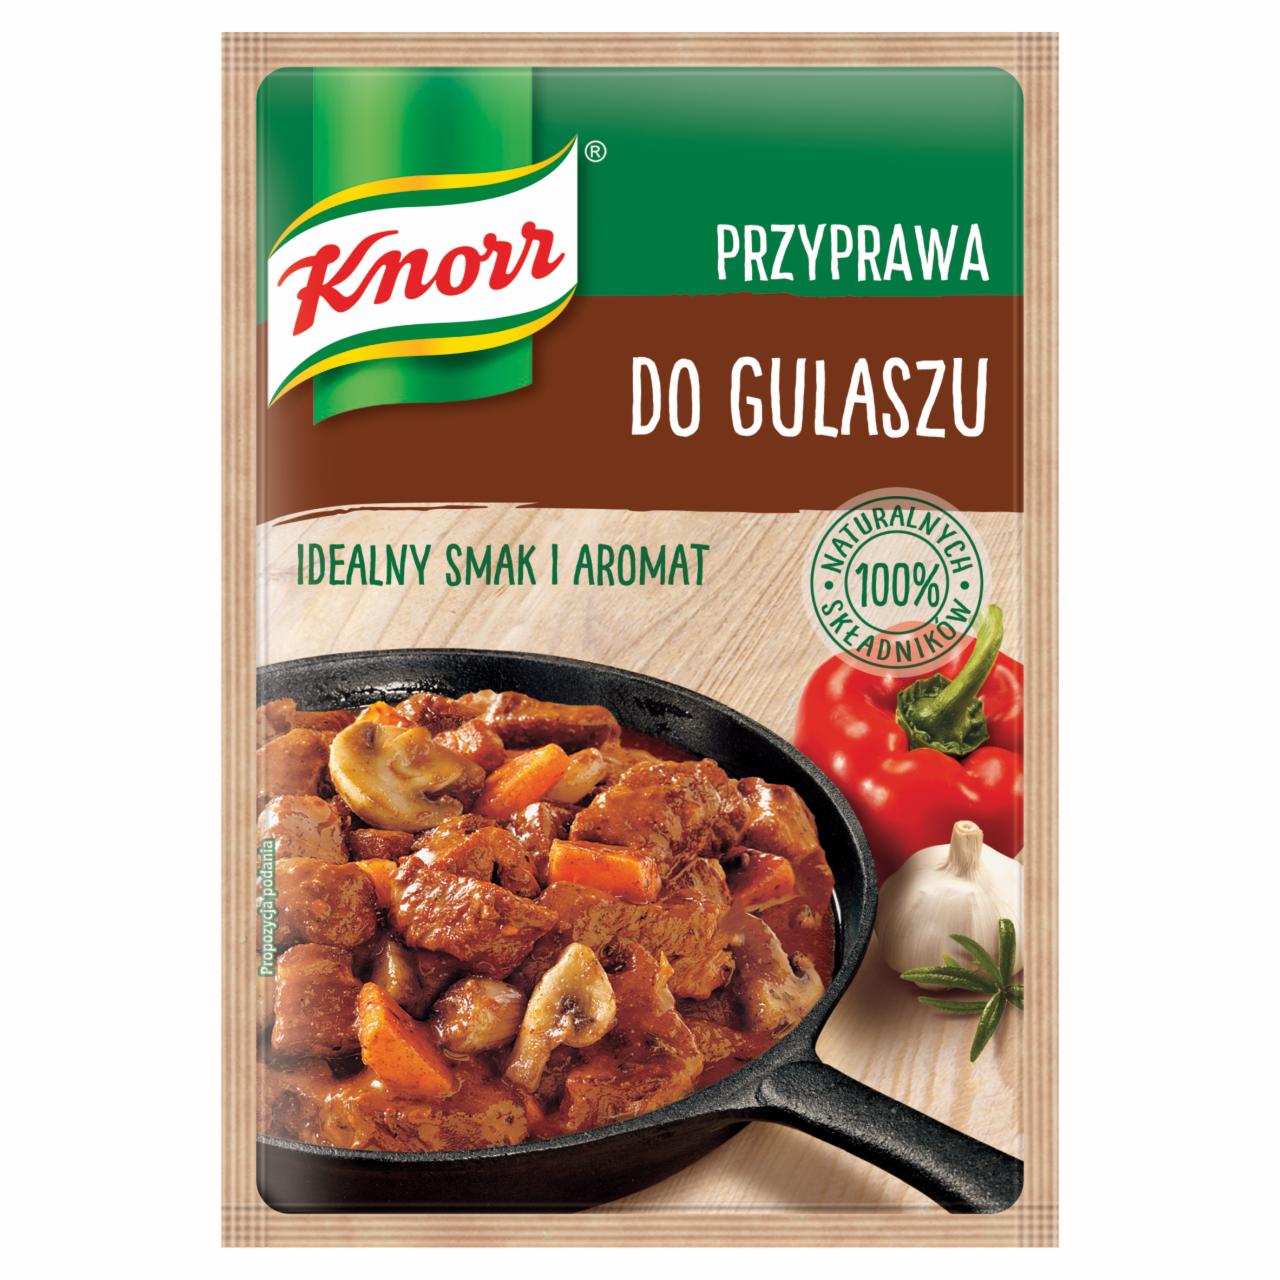 Zdjęcia - Knorr Przyprawa do gulaszu 23 g